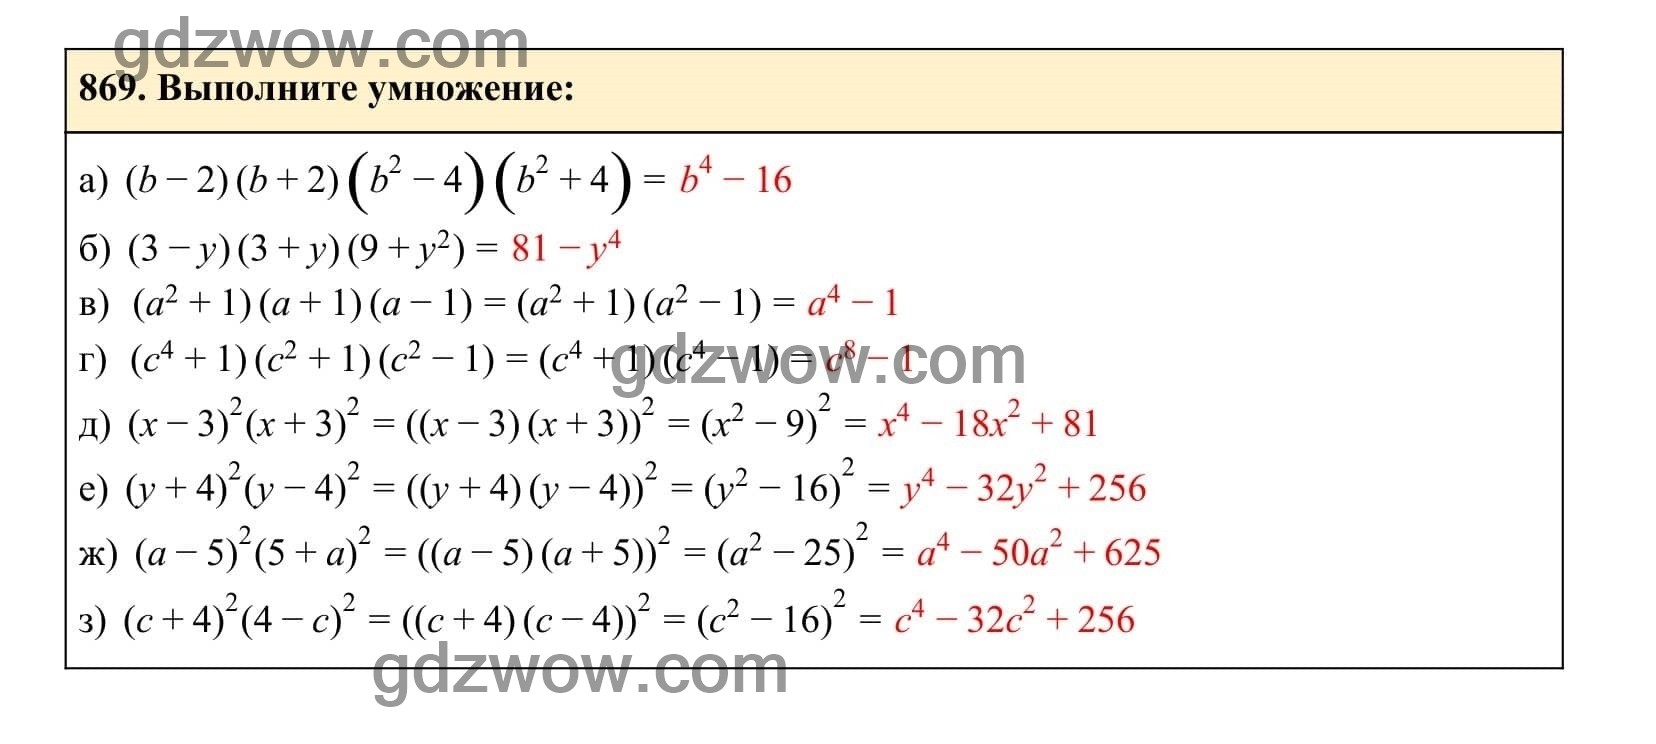 Упражнение 869 - ГДЗ по Алгебре 7 класс Учебник Макарычев (решебник) - GDZwow